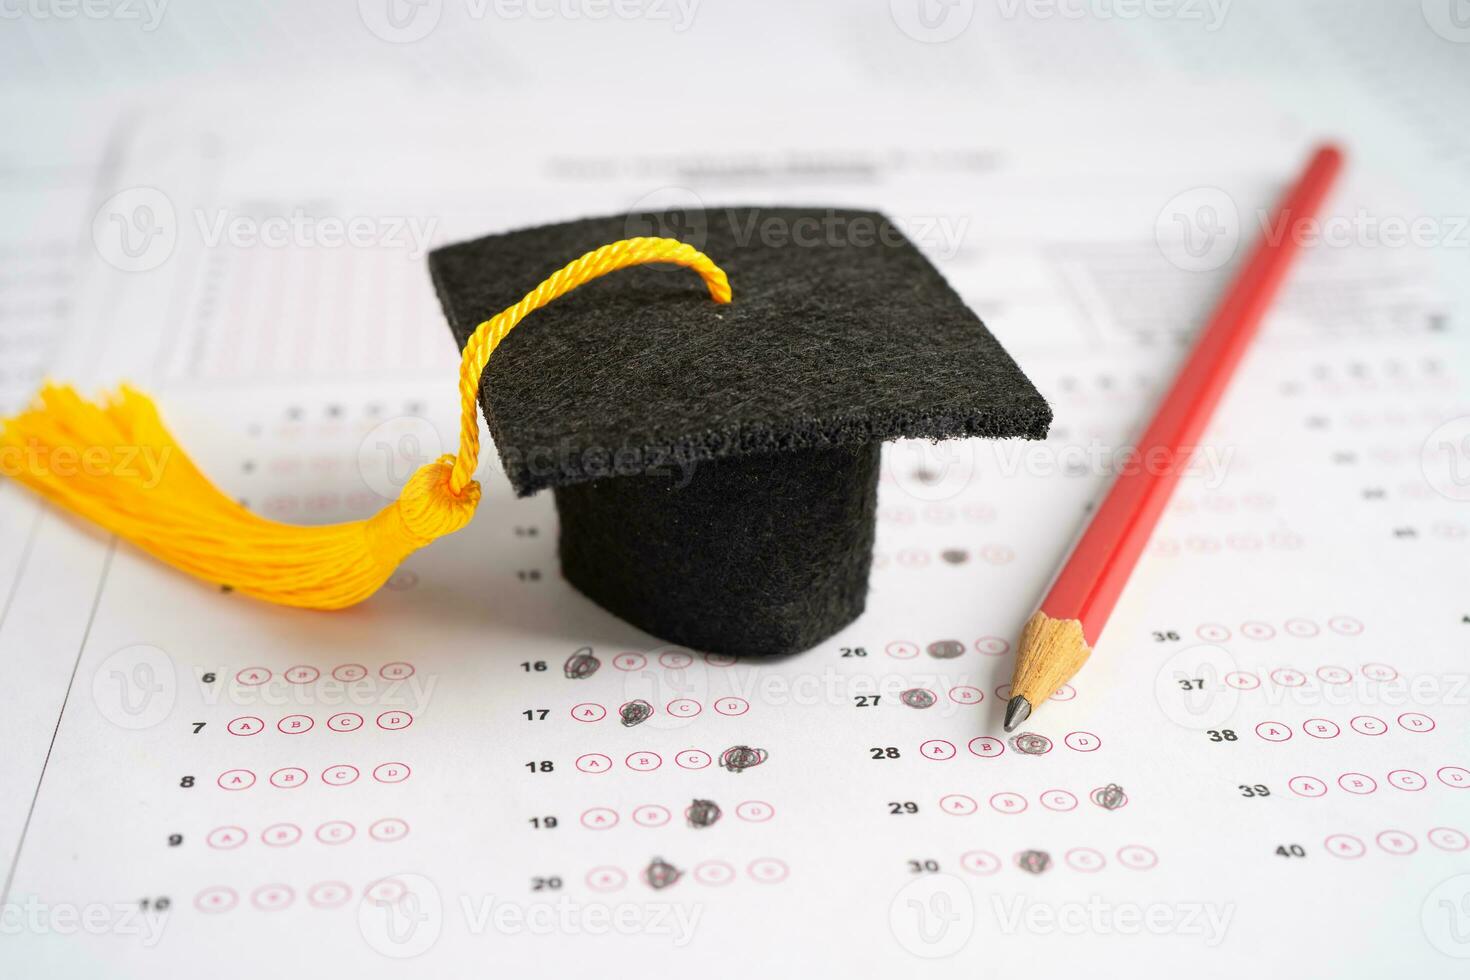 chapéu de lacuna de graduação e lápis no fundo da folha de respostas, estudo de educação, teste de aprendizagem, conceito de ensino. foto